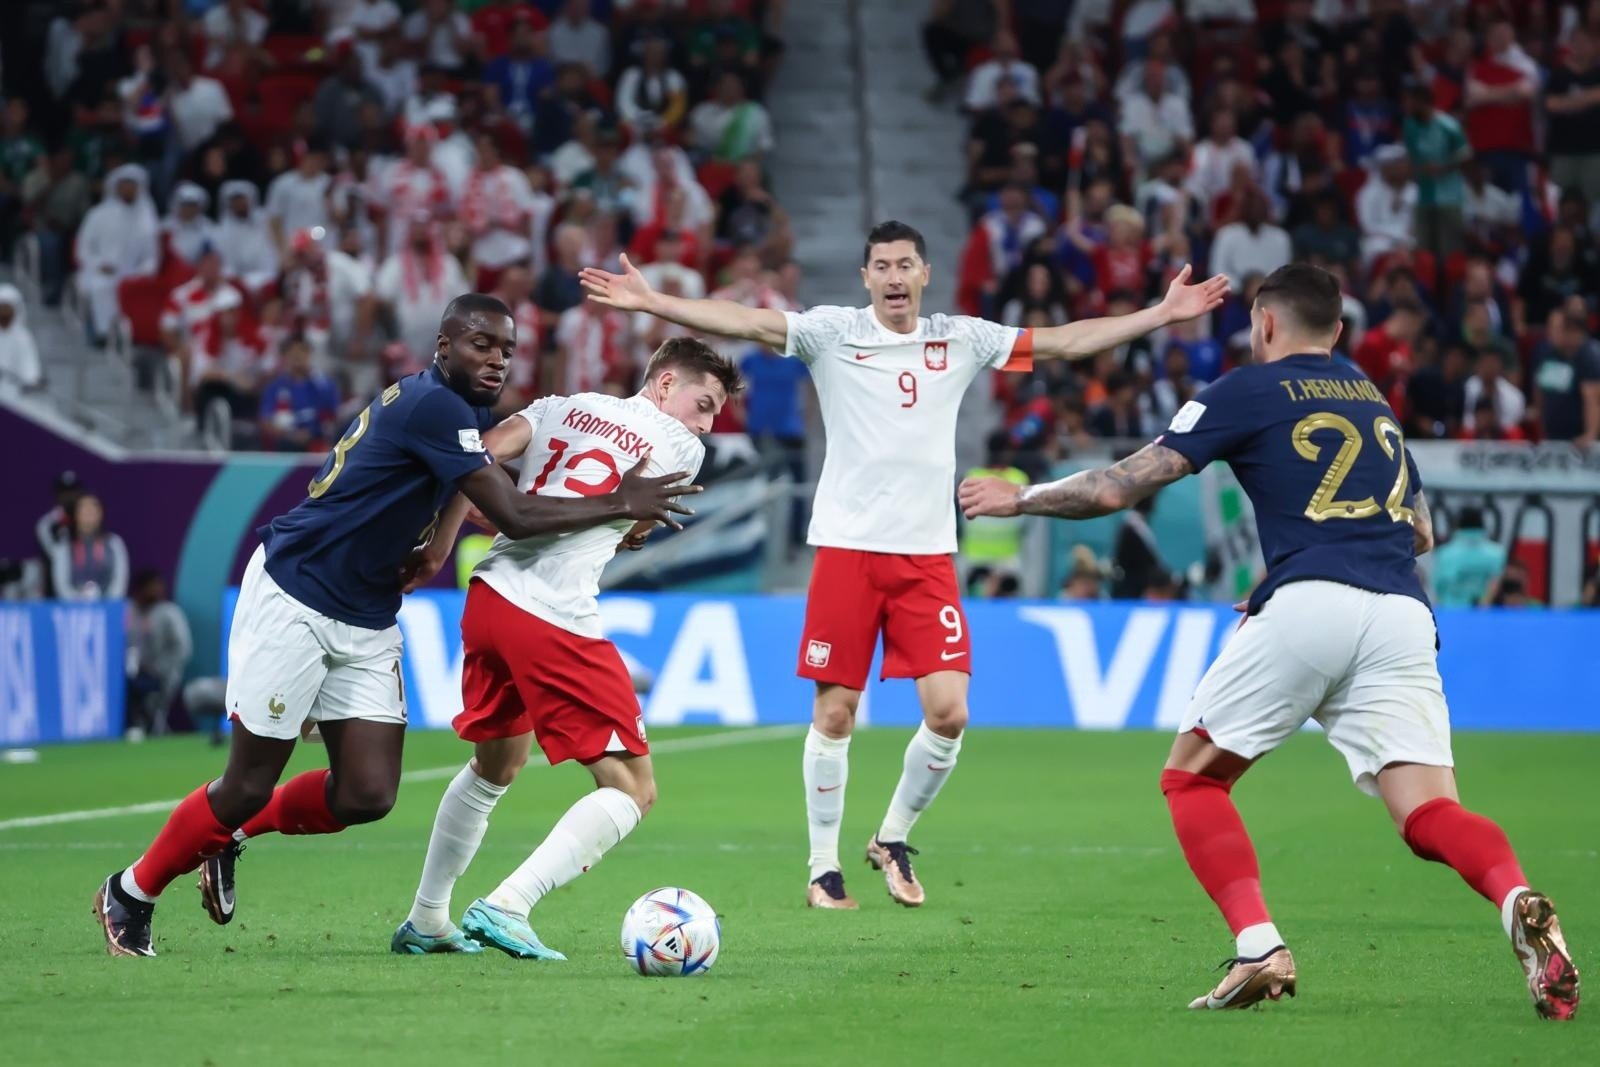 Pologne – France 12/04/2022 La Pologne est éliminée de la Coupe du monde après le meilleur match.  La leçon de Kylian Mbappé, le but d’adieu de Robert Lewandowski